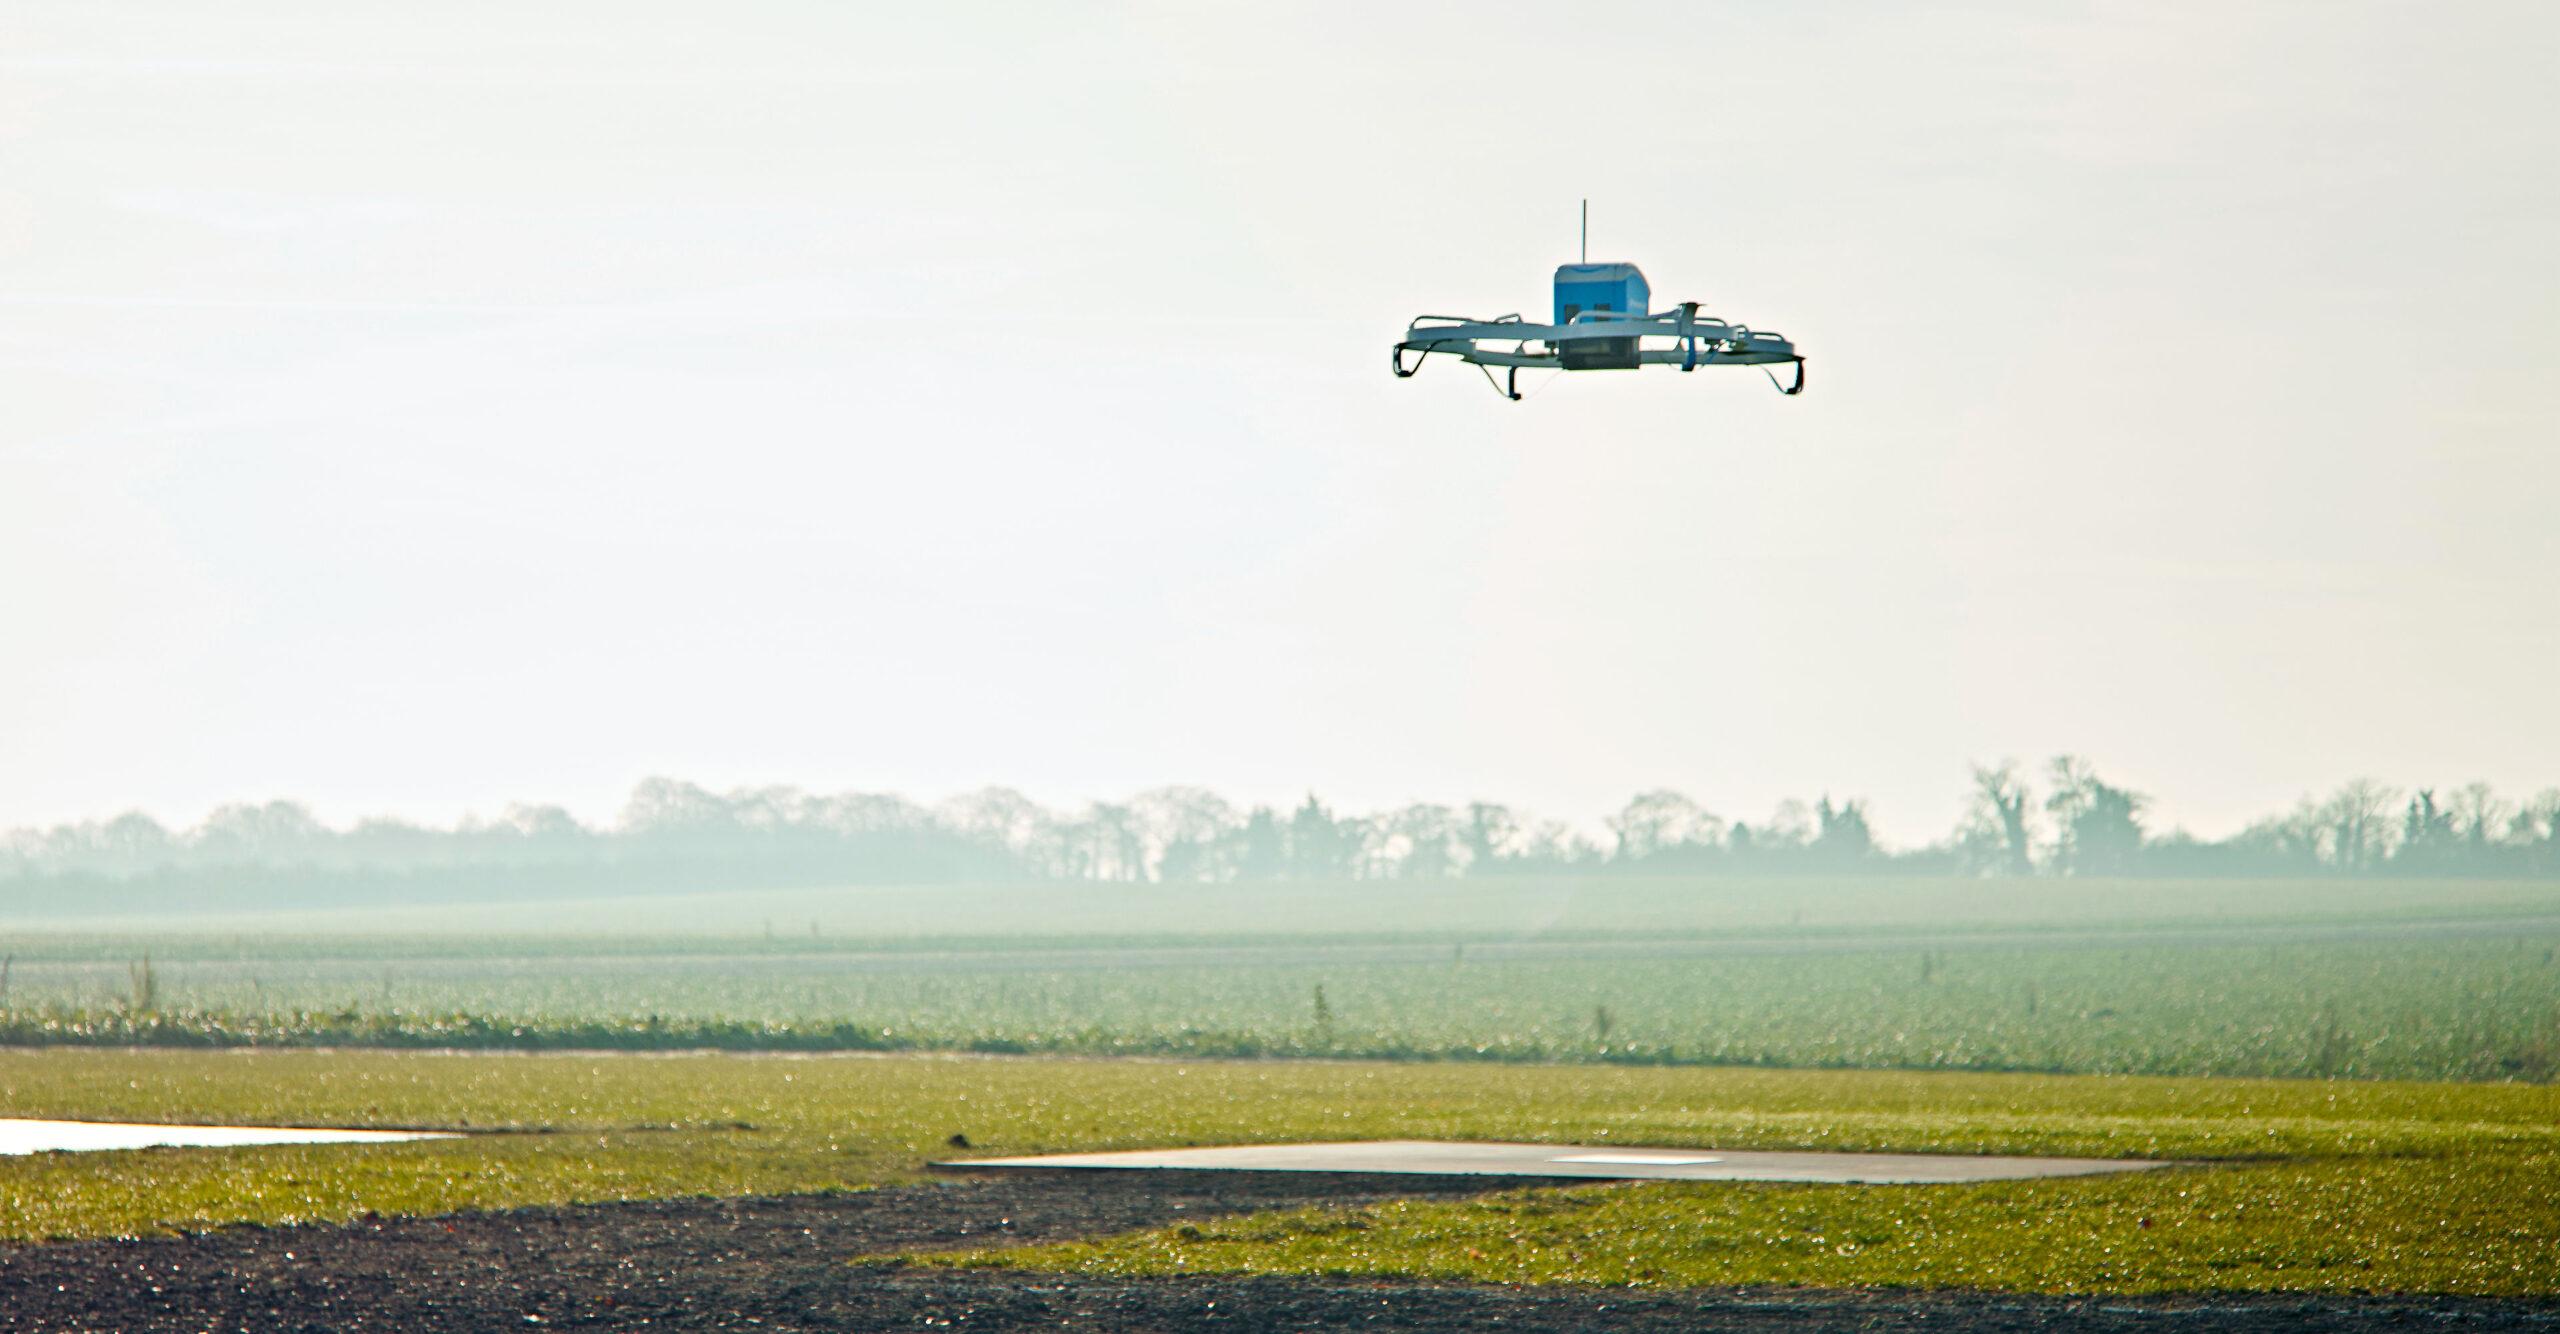 Paquetes voladores: Amazon presume sus entregas con drones mensajeros